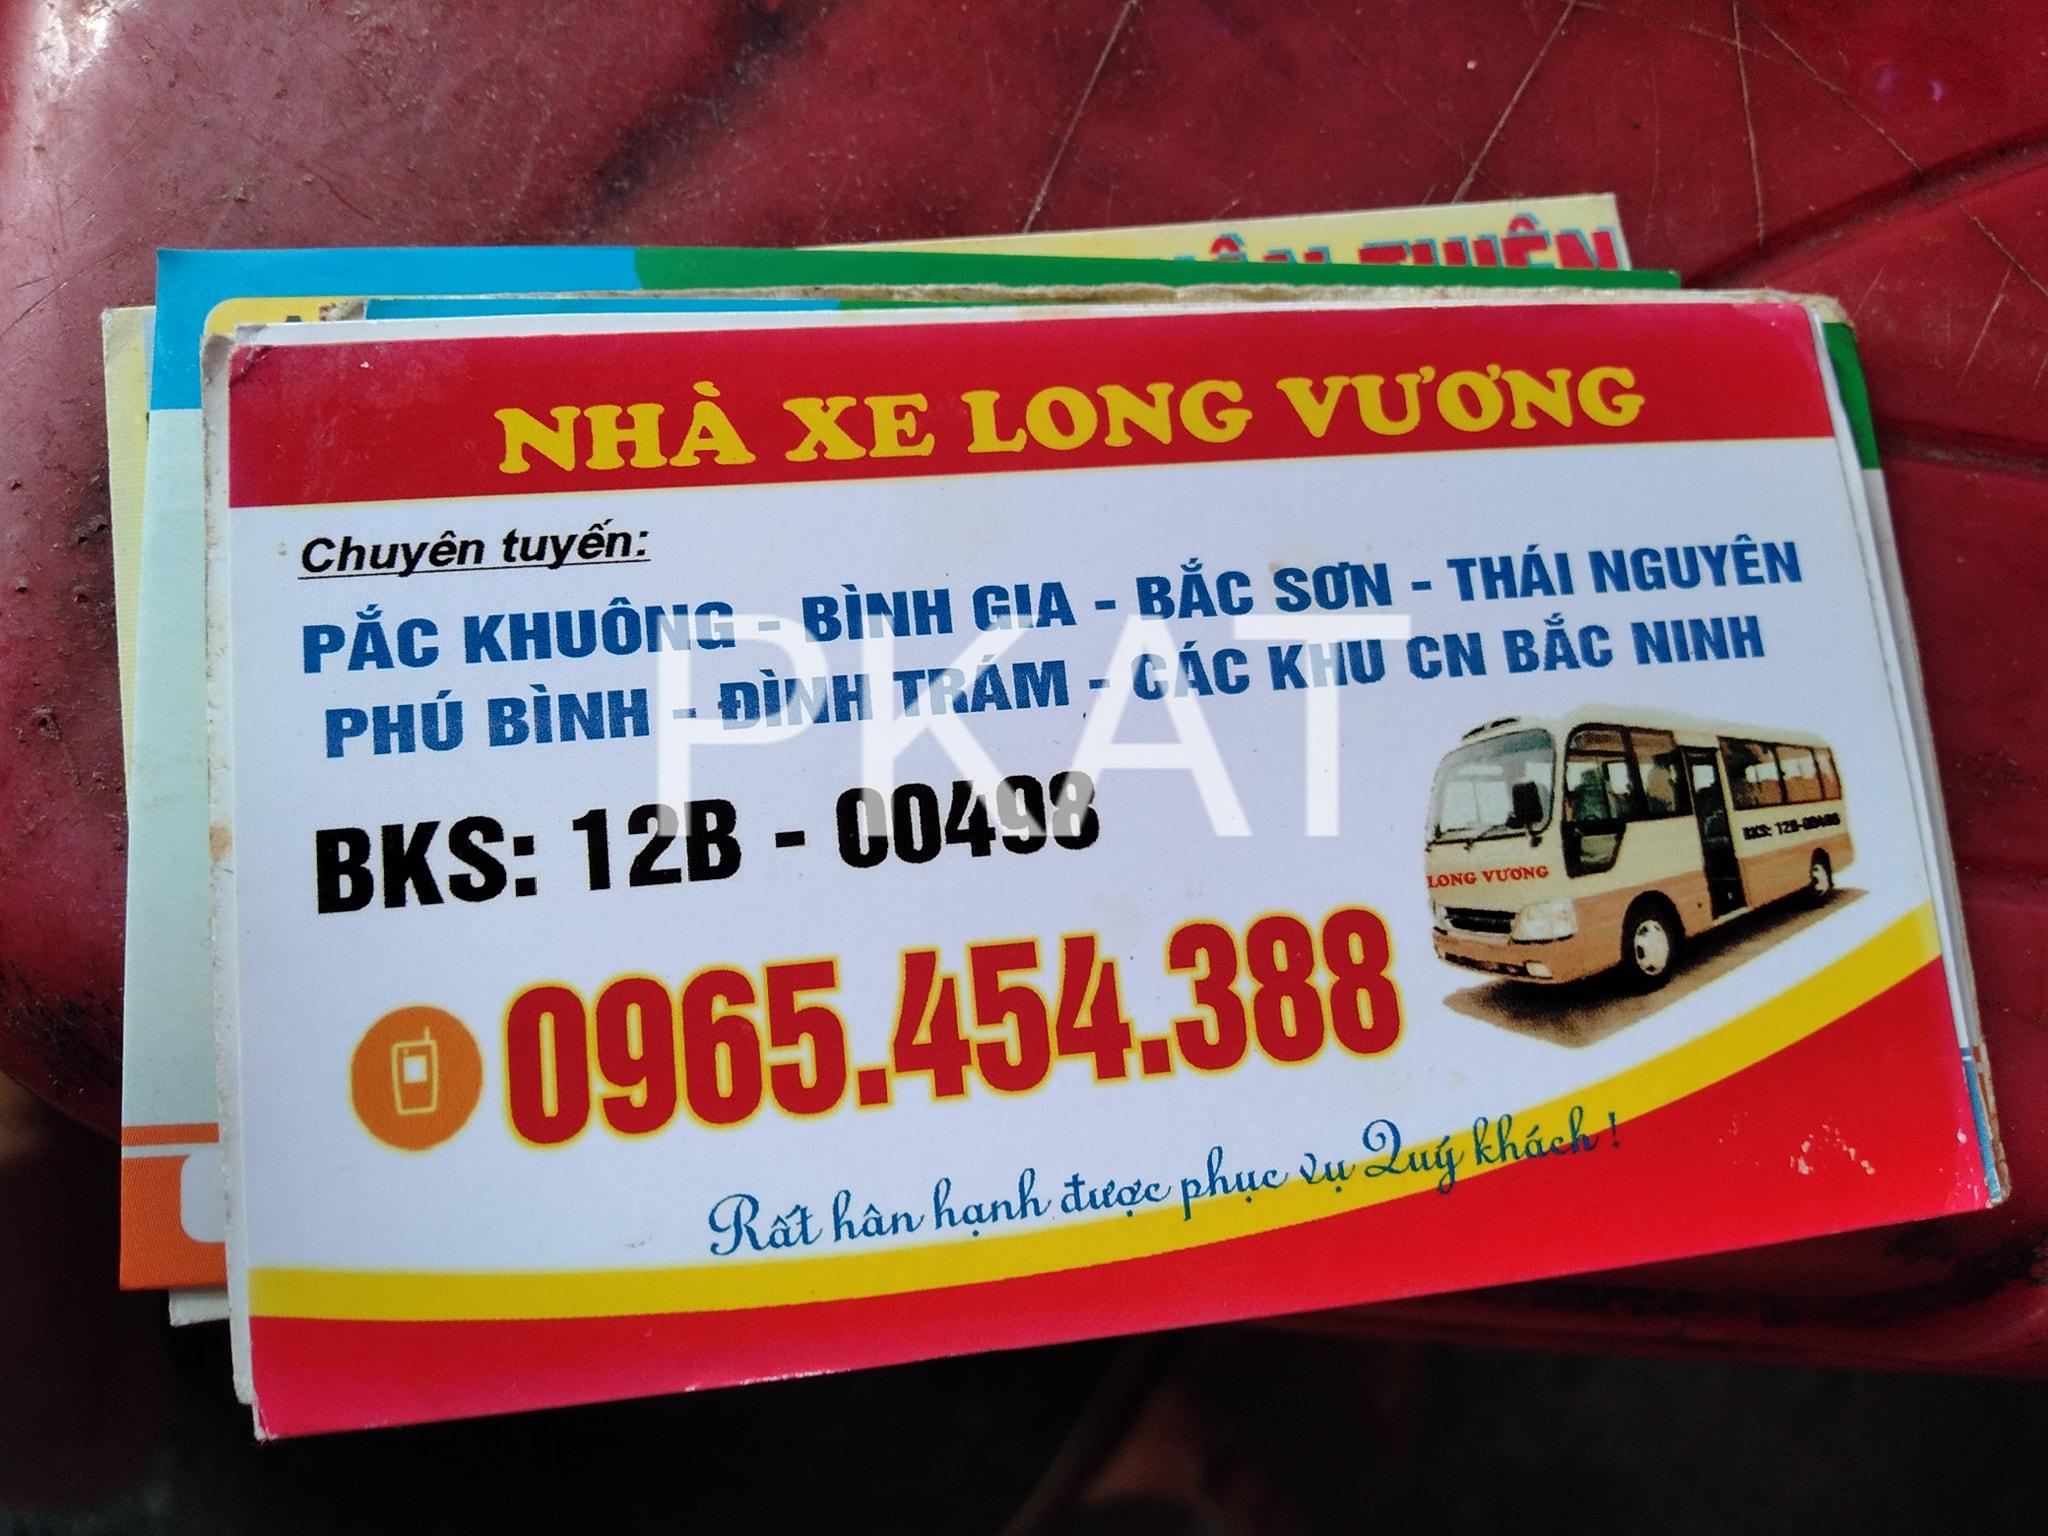 Nhà xe Bắc Ninh Lạng Sơn Long Vương